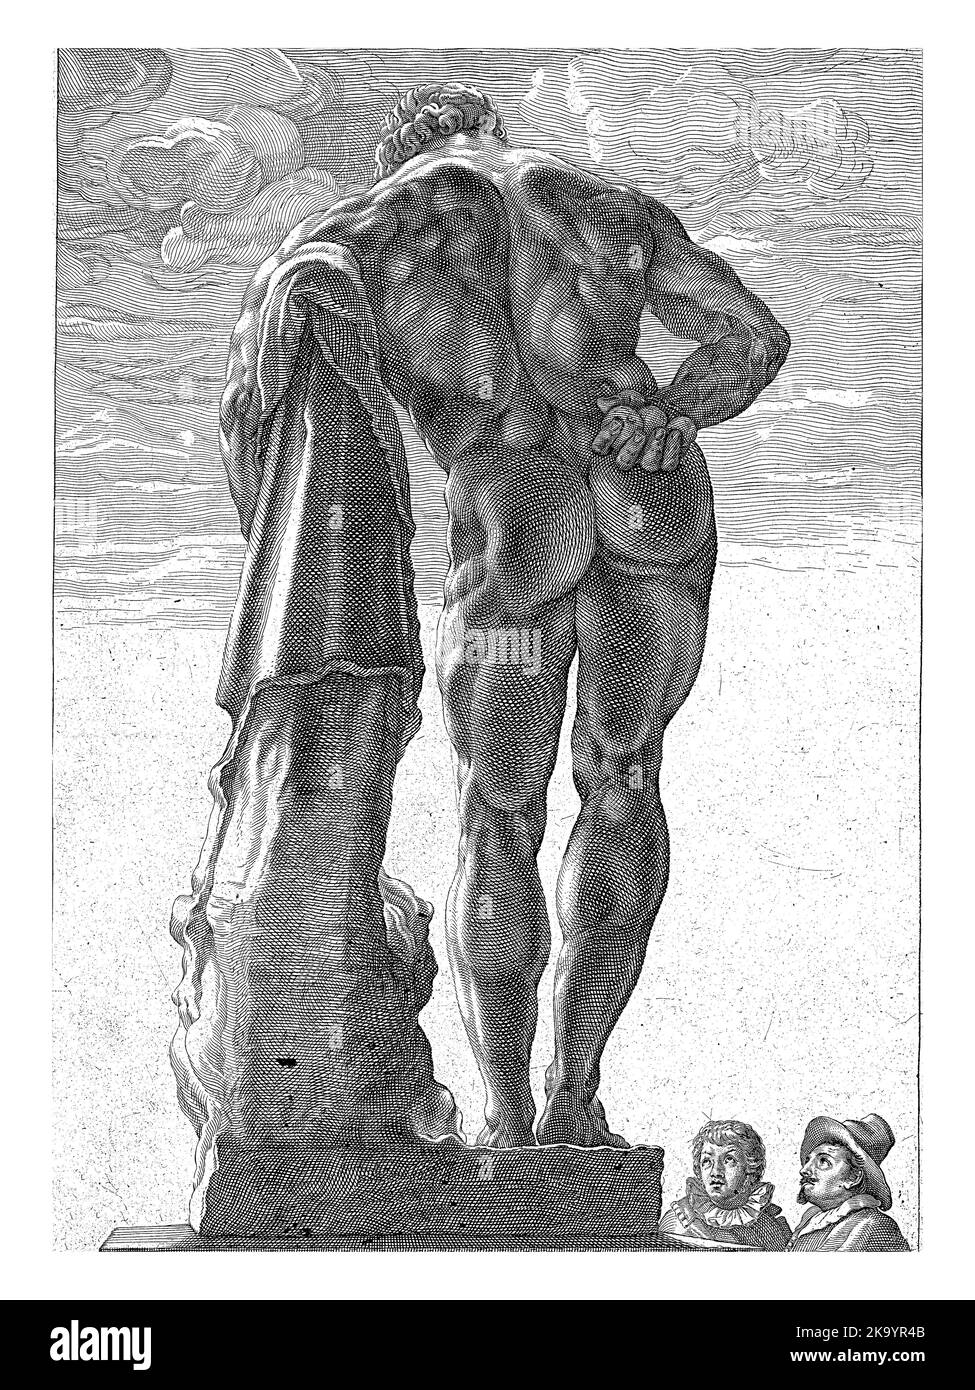 Une grande statue d'Hercules, vue de l'arrière, penchée sur son club. Jusqu'en 1787, cette statue se trouvait dans le Palazzo Farnese, d'où le nom Hercules Farn Banque D'Images